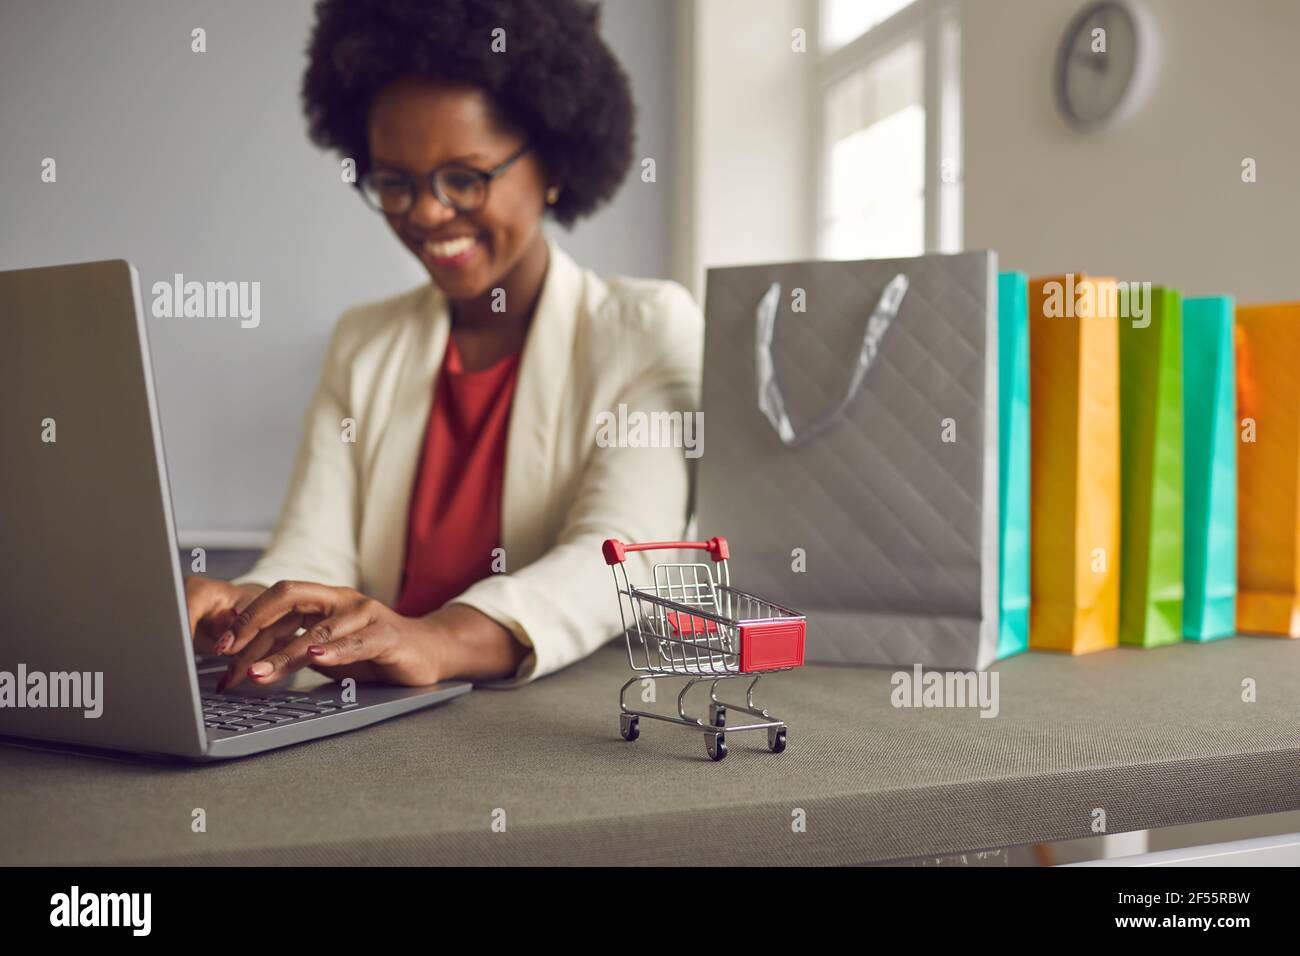 Spielzeugwagen auf einem Tisch in der Nähe von Einkaufstaschen und neben einer Frau, die online einkaufen. Stockfoto